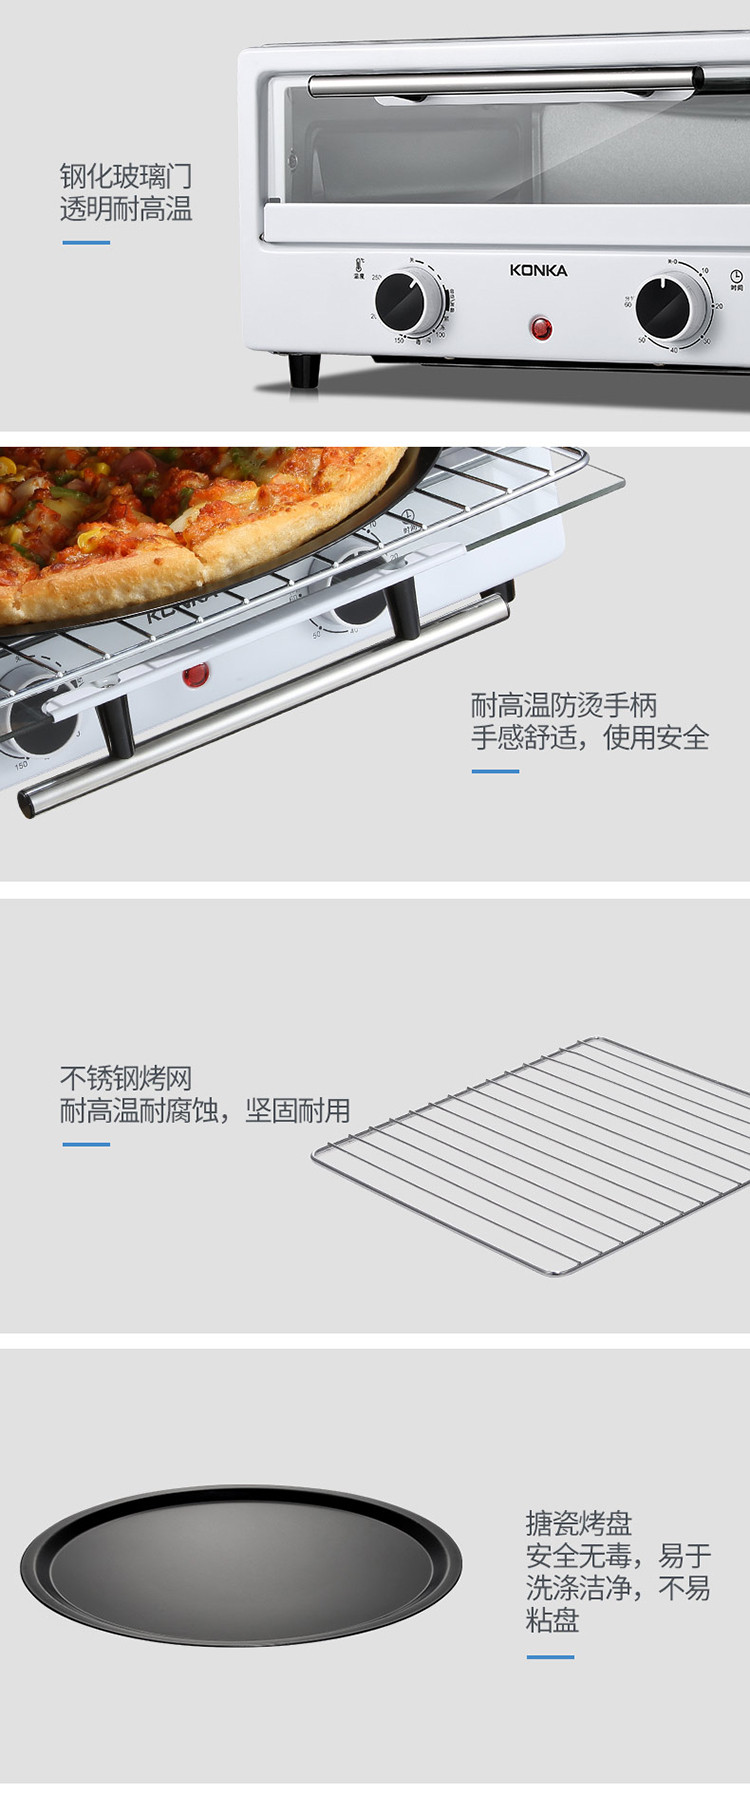 康佳/KONKA 披萨机烤箱煎烤机电烤箱12L煎烤机KGKX-1213